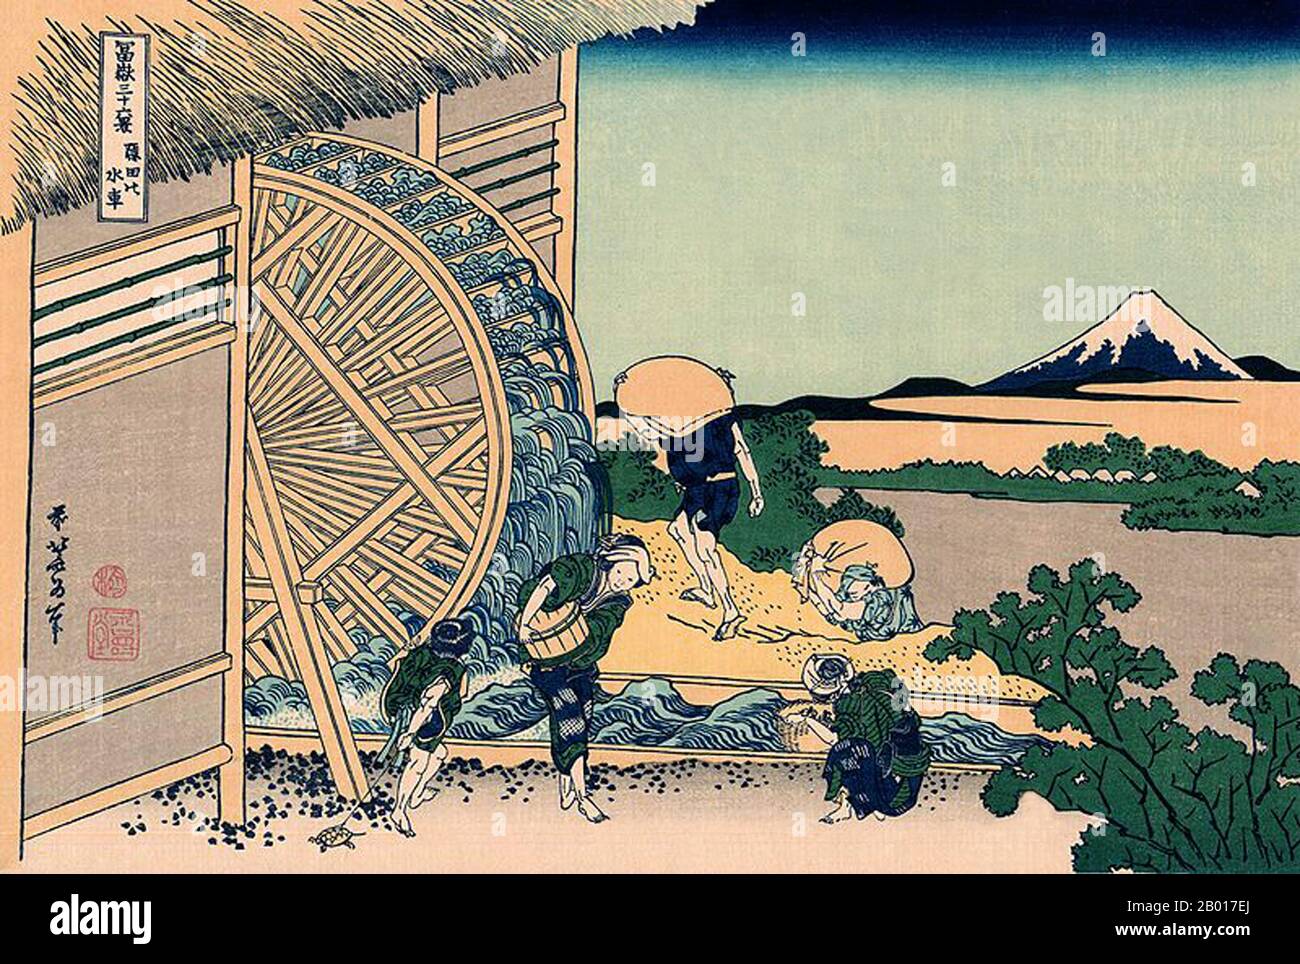 Japan: ‘The Waterwheel at Onden’. Ukiyo-e Holzschnitt aus der Serie ‘Thirty-Six views of Mount Fuji’ von Katsushika Hokusai (31. Oktober 1760 - 10. Mai 1849), 1830. ‘Thirty-Six Views of Mount Fuji’ ist eine Serie von Holzschnitten der japanischen Künstlerin Katsushika Hokusai, die „Sukiyo-e“ ‘. Die Serie zeigt den Fuji in unterschiedlichen Jahreszeiten und Wetterbedingungen an verschiedenen Orten und Entfernungen. Es besteht tatsächlich aus 46 Drucken, die zwischen 1826 und 1833 entstanden sind. Die ersten 36 wurden in die Originalpublikation aufgenommen, und aufgrund ihrer Popularität wurden nach der Originalpublikation 10 weitere hinzugefügt. Stockfoto